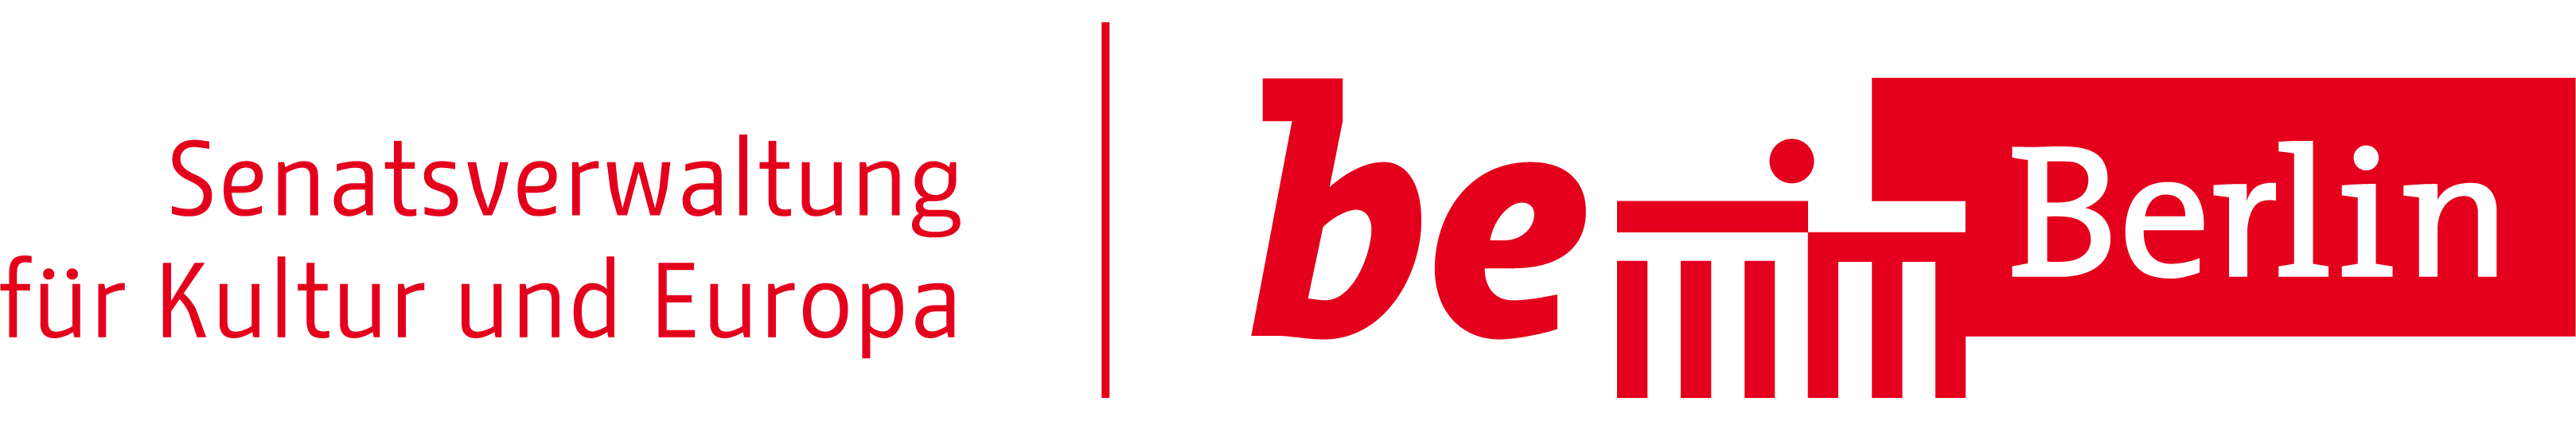 Senke-logo